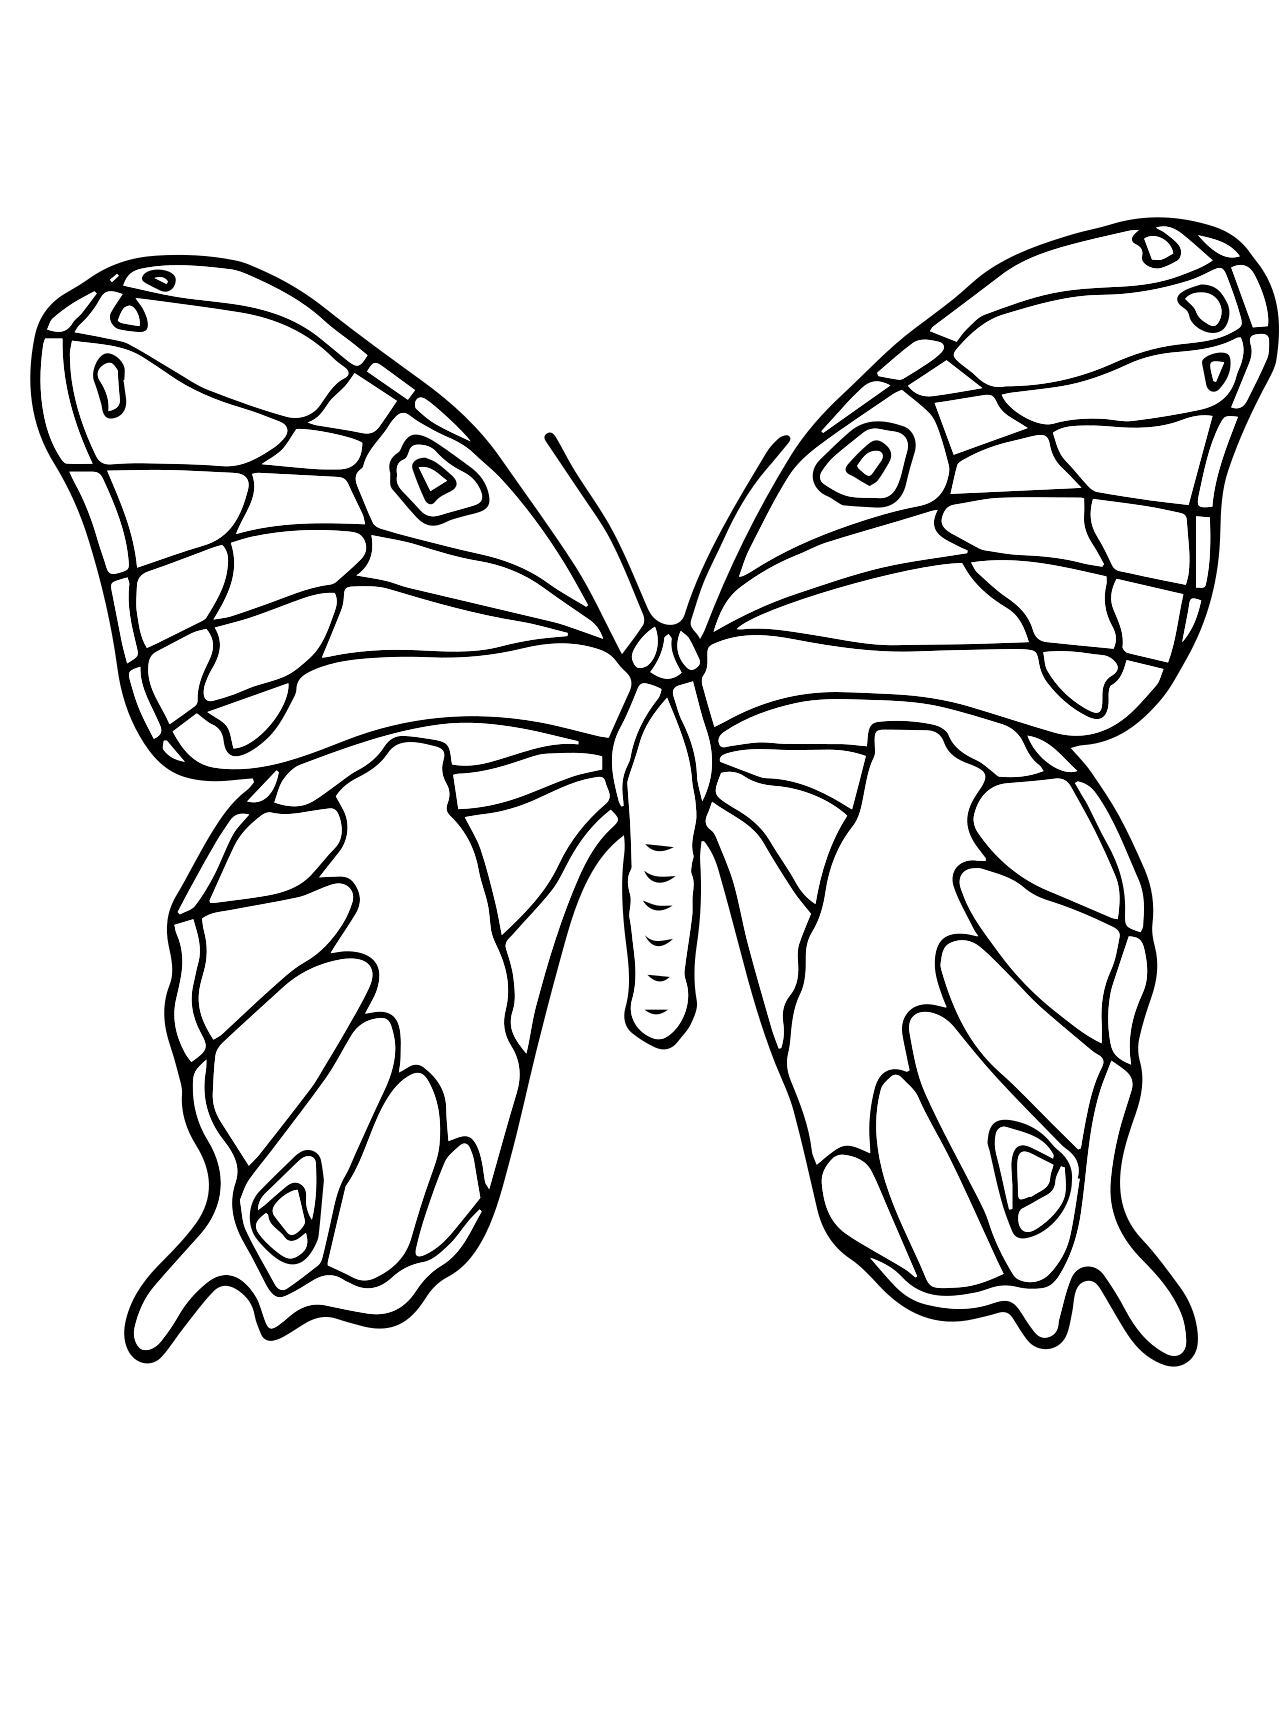 Насекомые раскраска для детей 6 7 лет. Раскраска "бабочки". Бабочка раскраска для детей. Бабочка раскраска для малышей. Рисунок бабочки для раскрашивания.